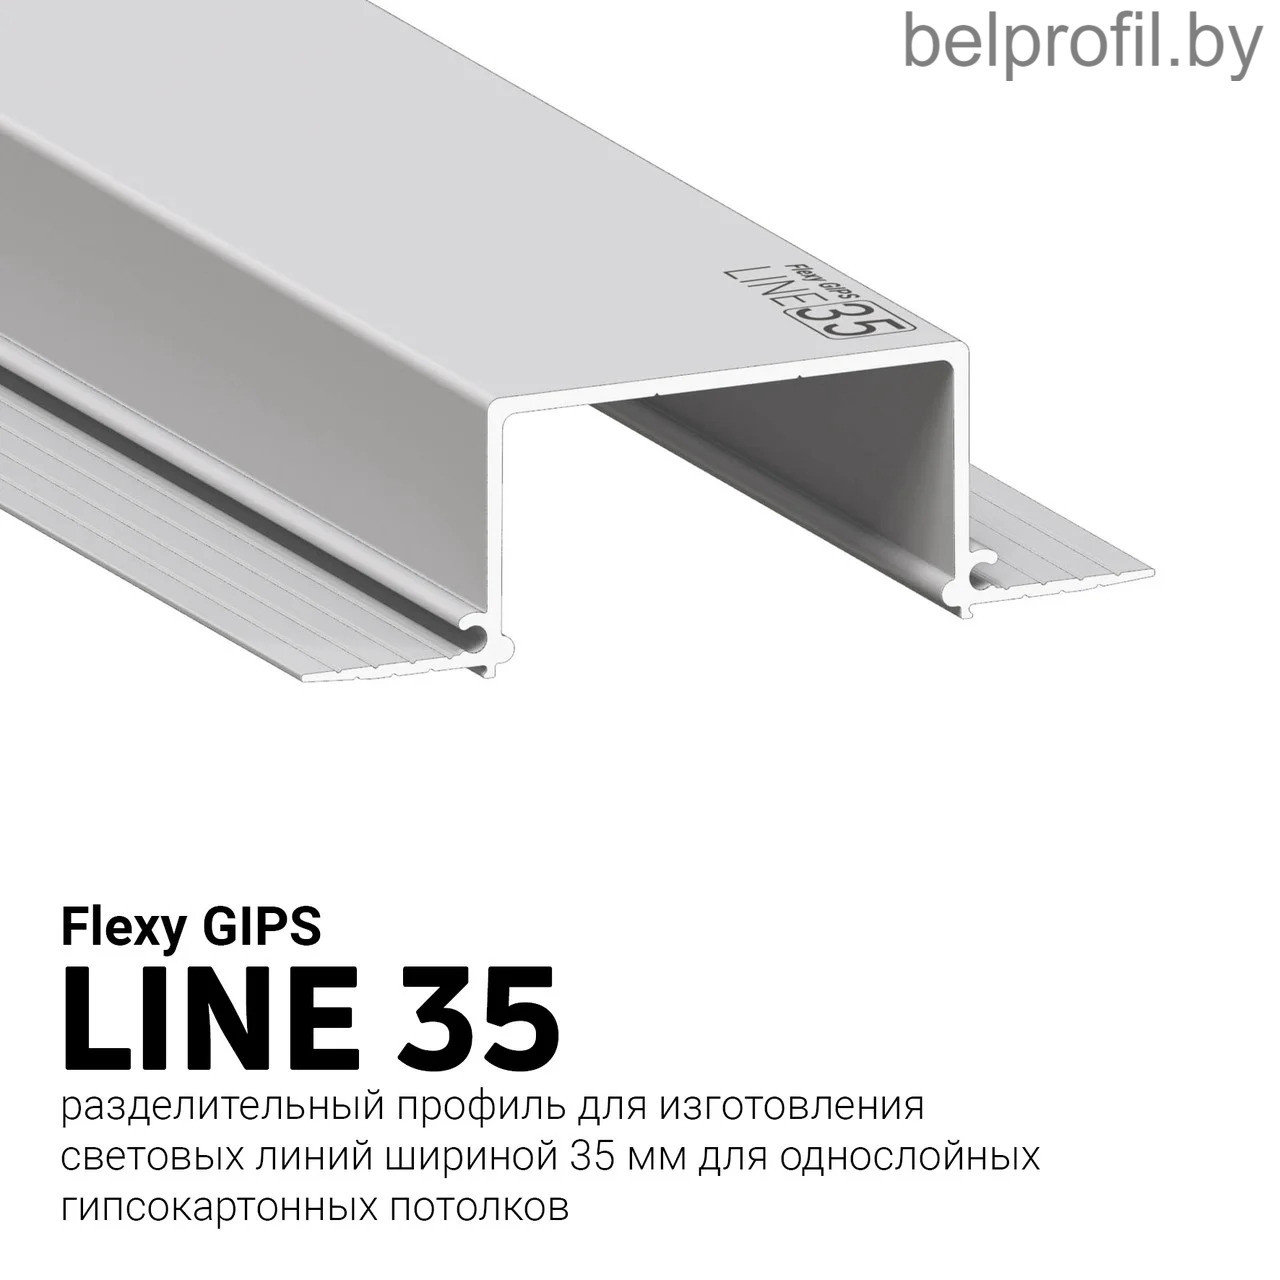 Профиль для световых линий Flexy GIPS LINE 35, фото 1